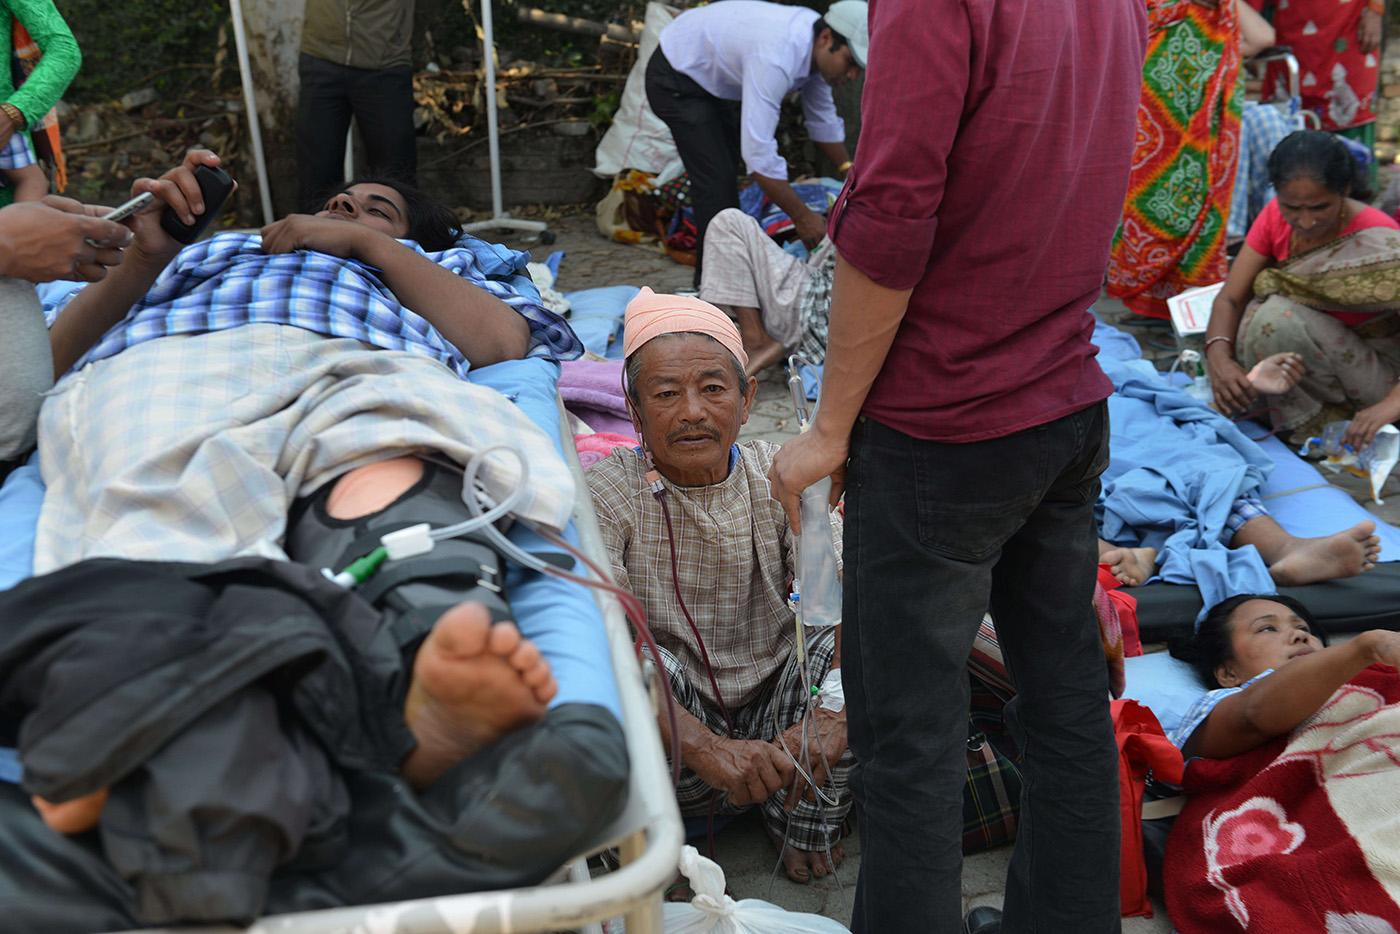 Patienterna hamnade på gatan efter att ett sjukhus utrymdes i Katmandu.